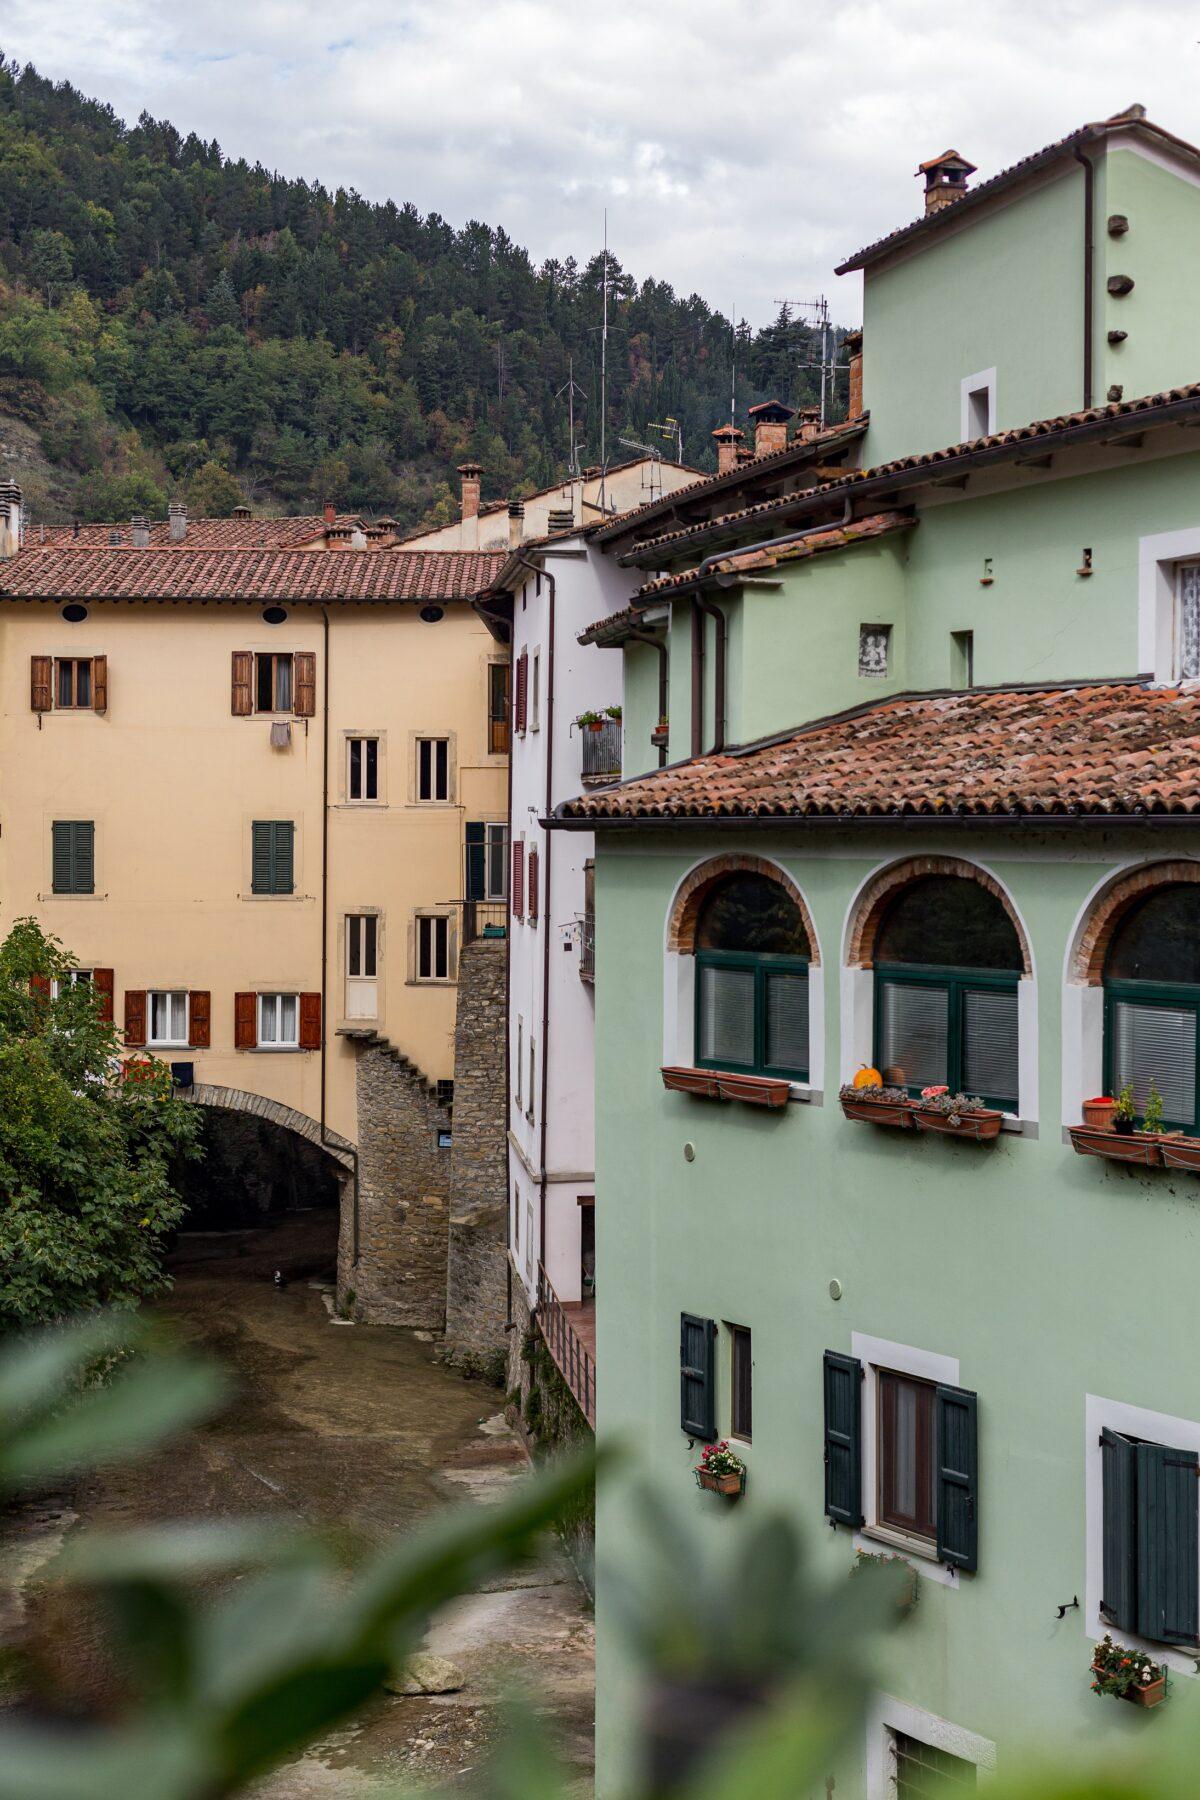 The rural town of Marradi. (Giulia Scarpaleggia and Tommaso Galli)